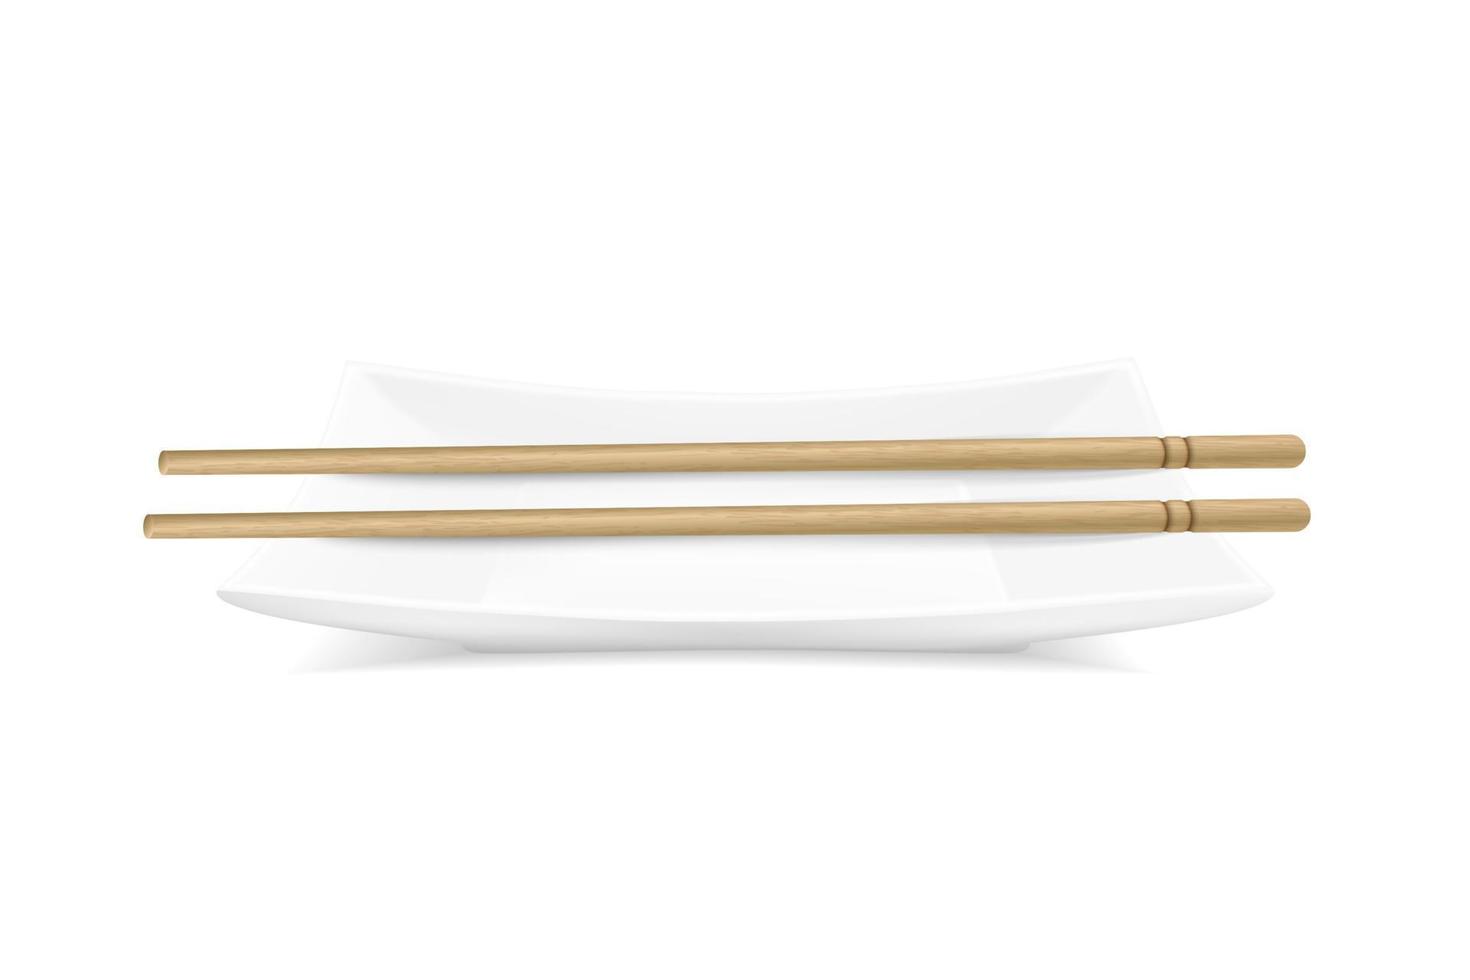 vektorrealistische rechteckige platte mit bambusstöcken. Illustration der Sushi-Tischservierung. Ausblick von Oben vektor